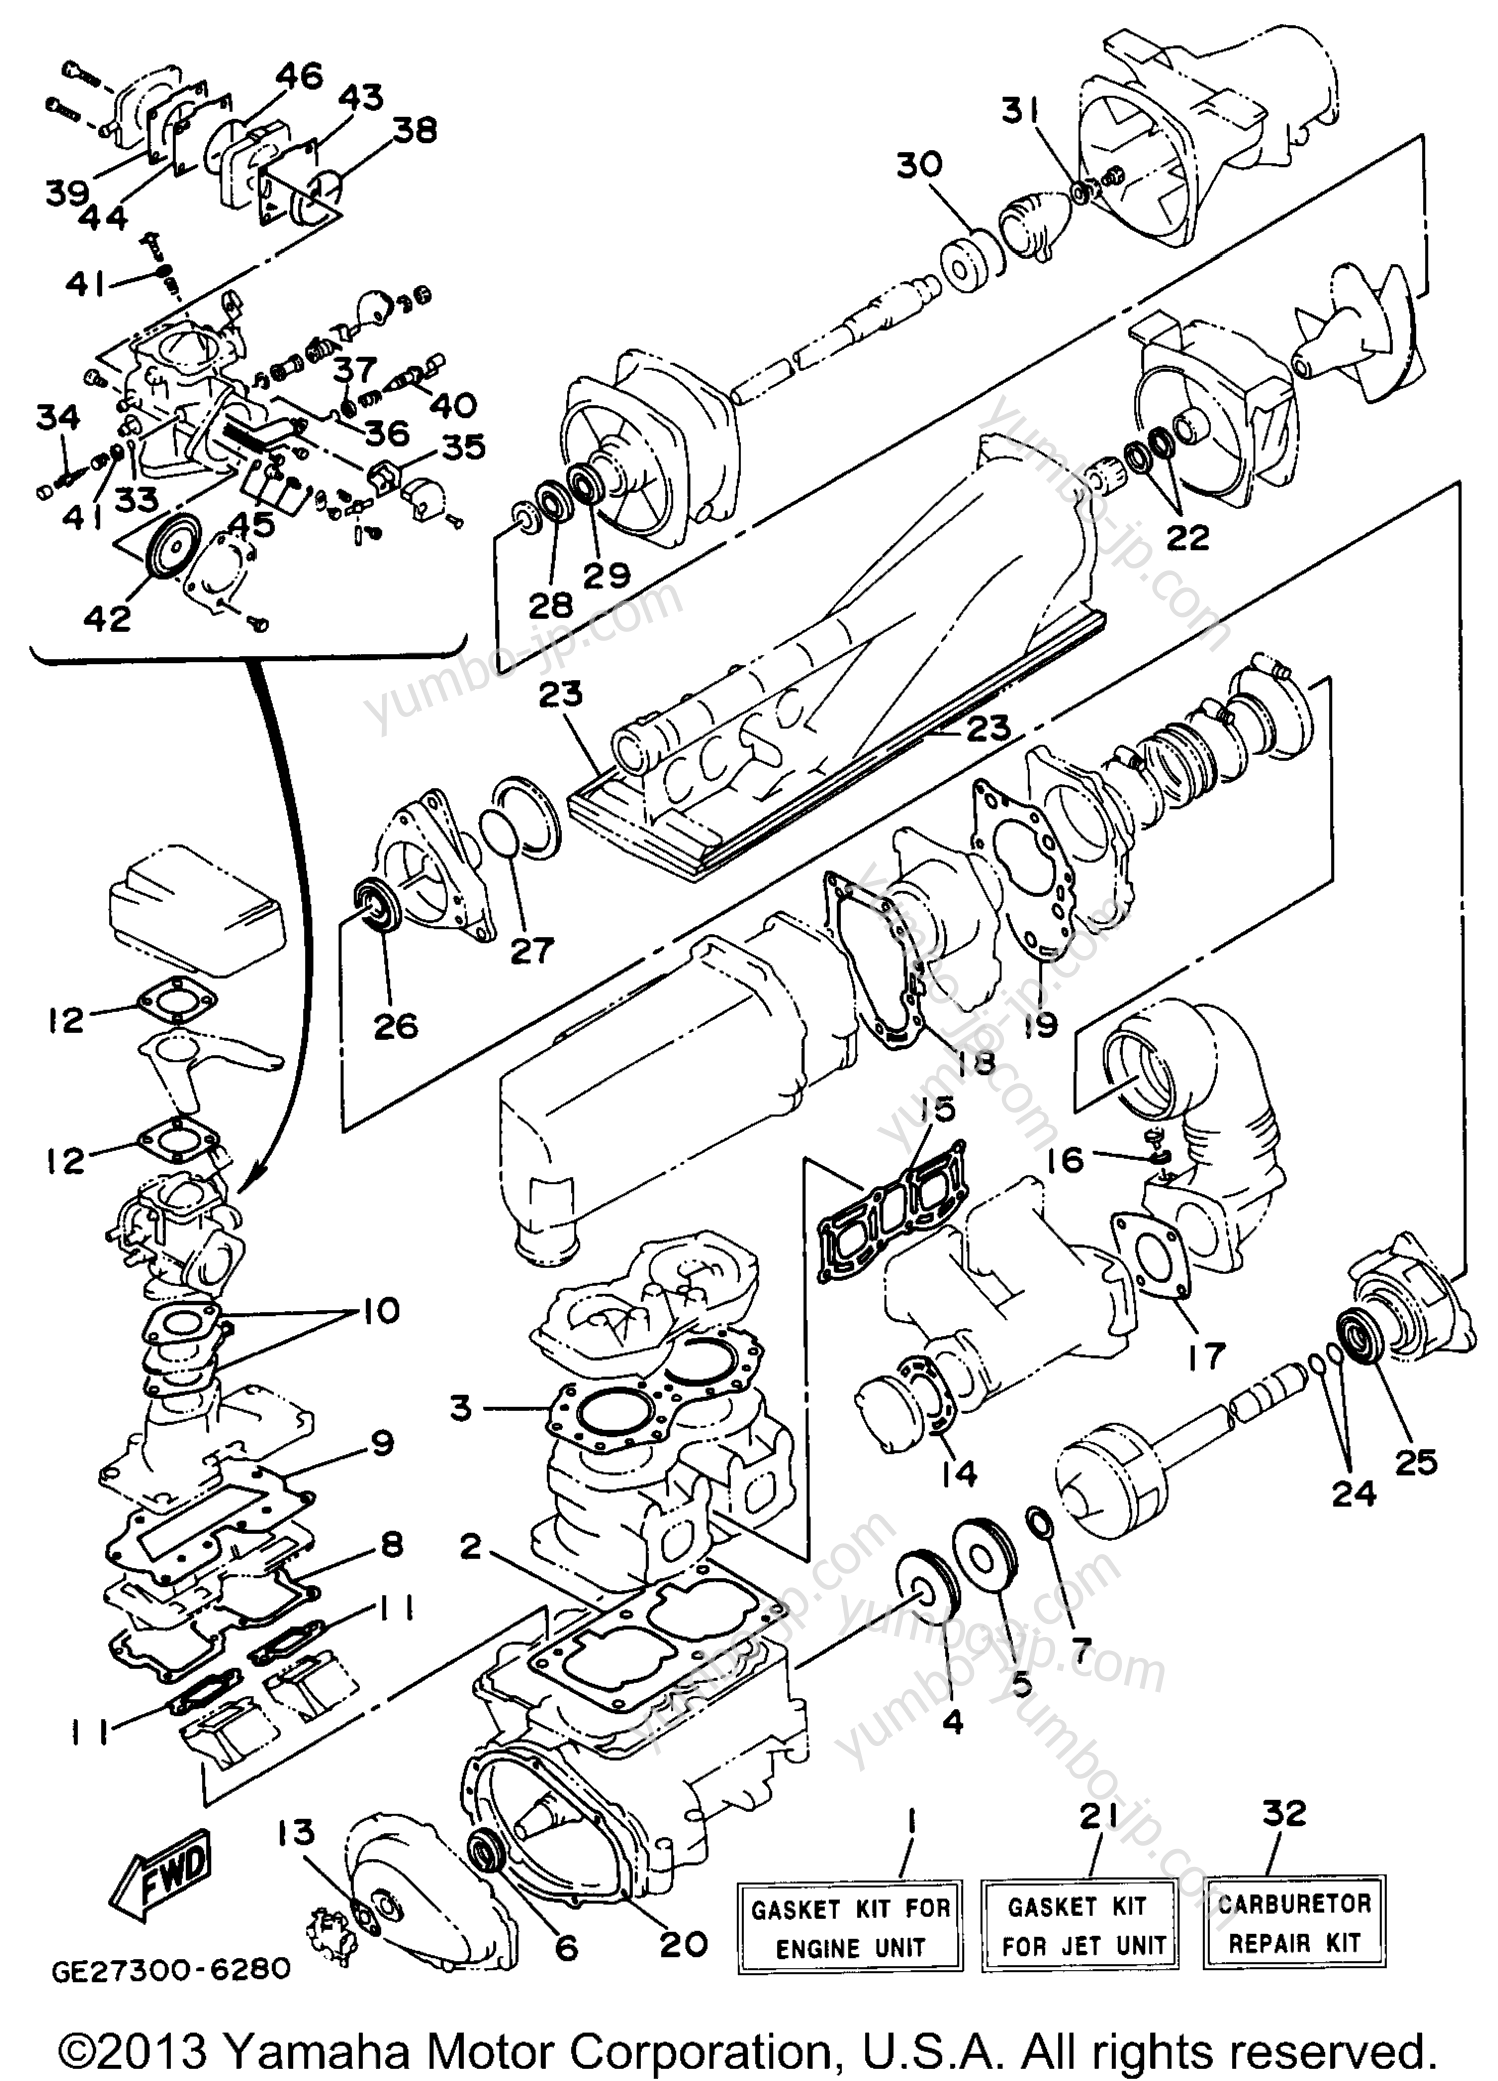 Ремкомплект / Набор прокладок для гидроциклов YAMAHA WAVE RUNNER III (WRA650U) 1996 г.